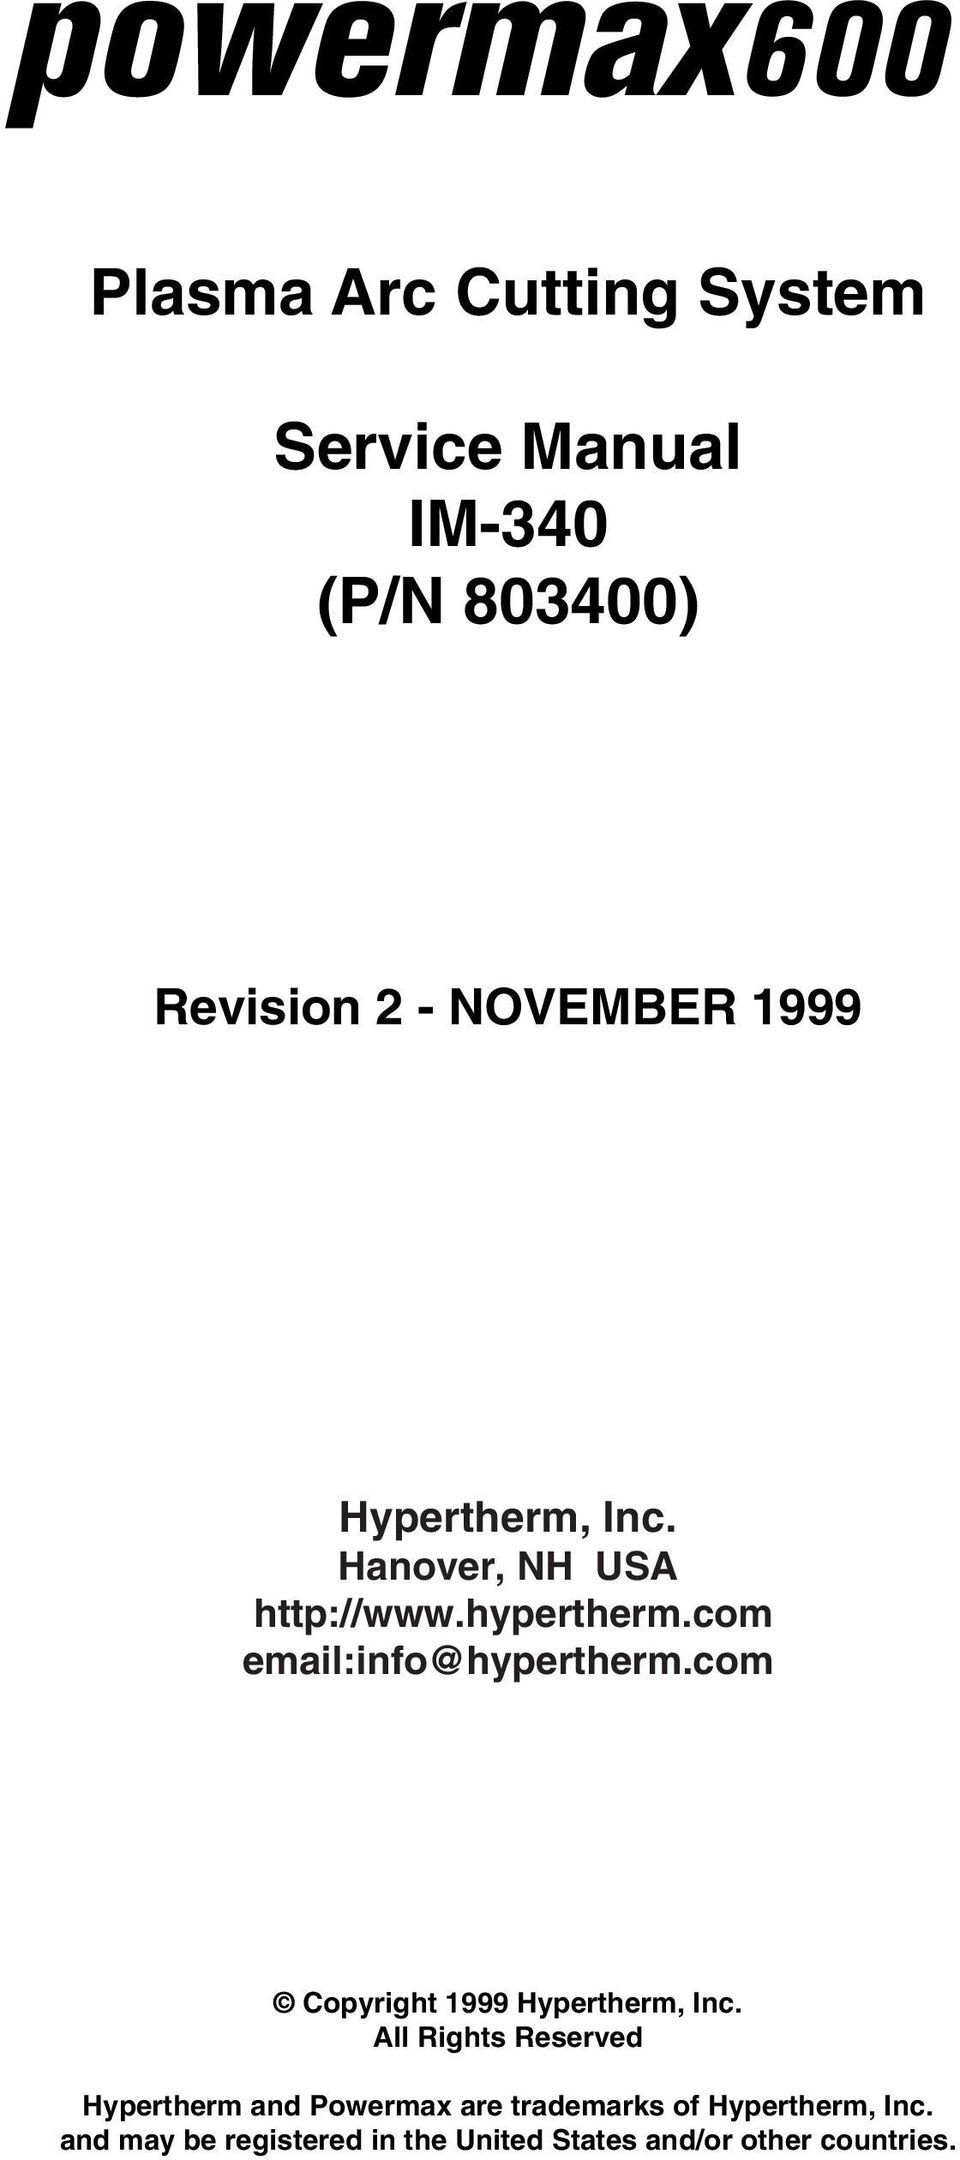 com email:info@hypertherm.com Copyright 1999 Hypertherm, Inc.